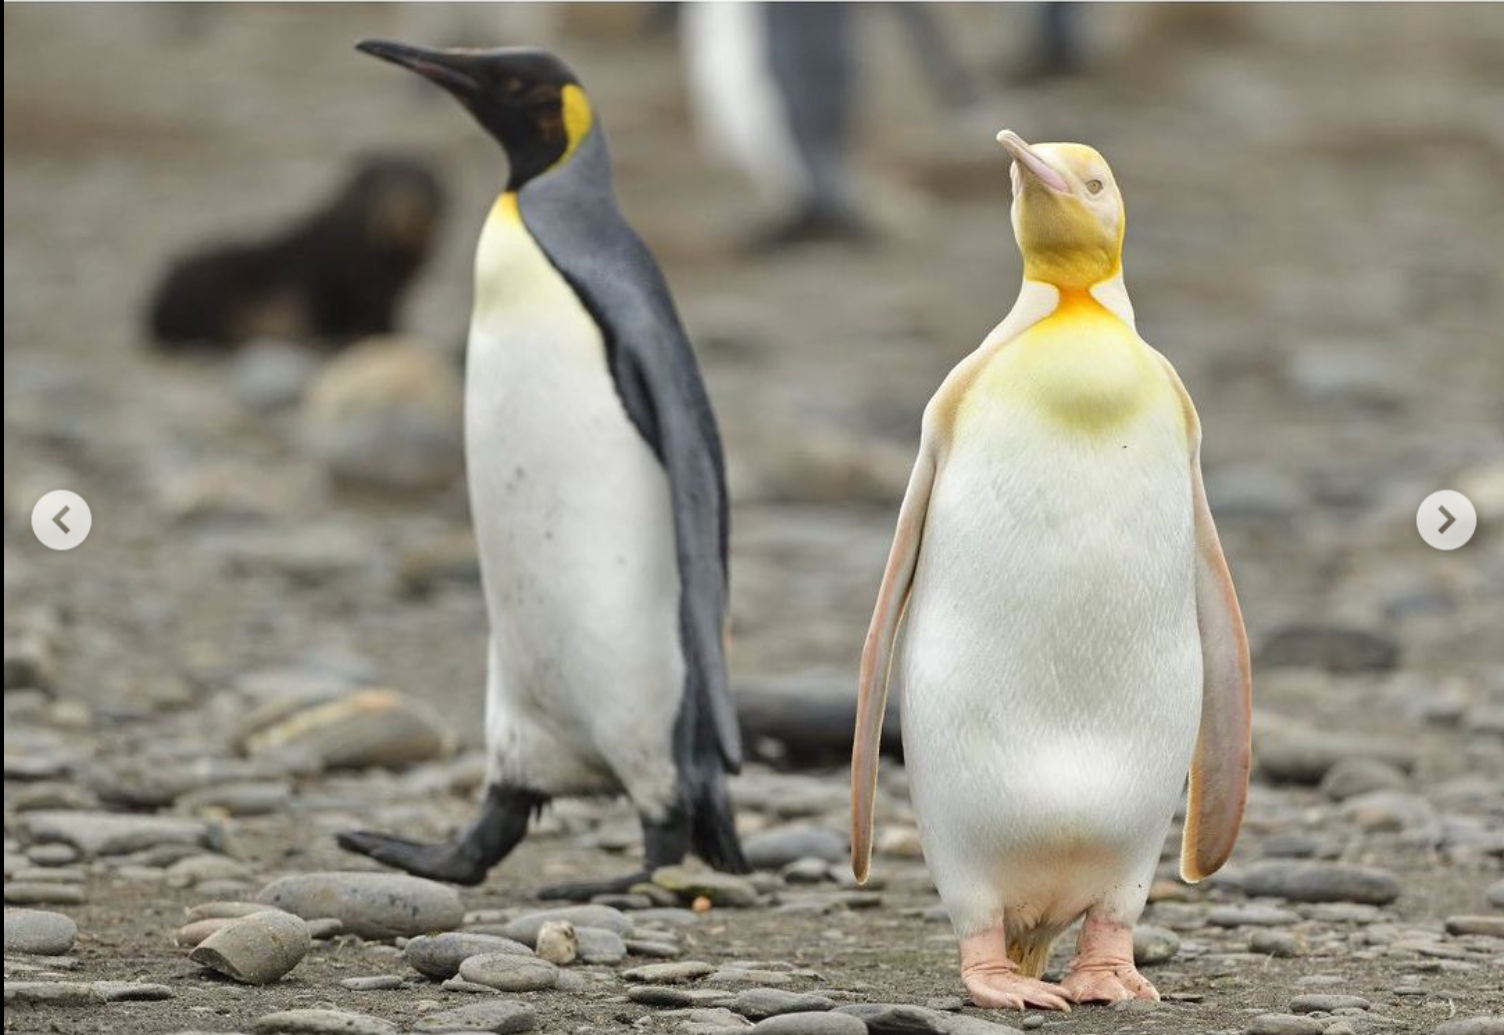 Сенсация. Впервые в мире в объектив попал желтый пингвин (ФОТО) 3